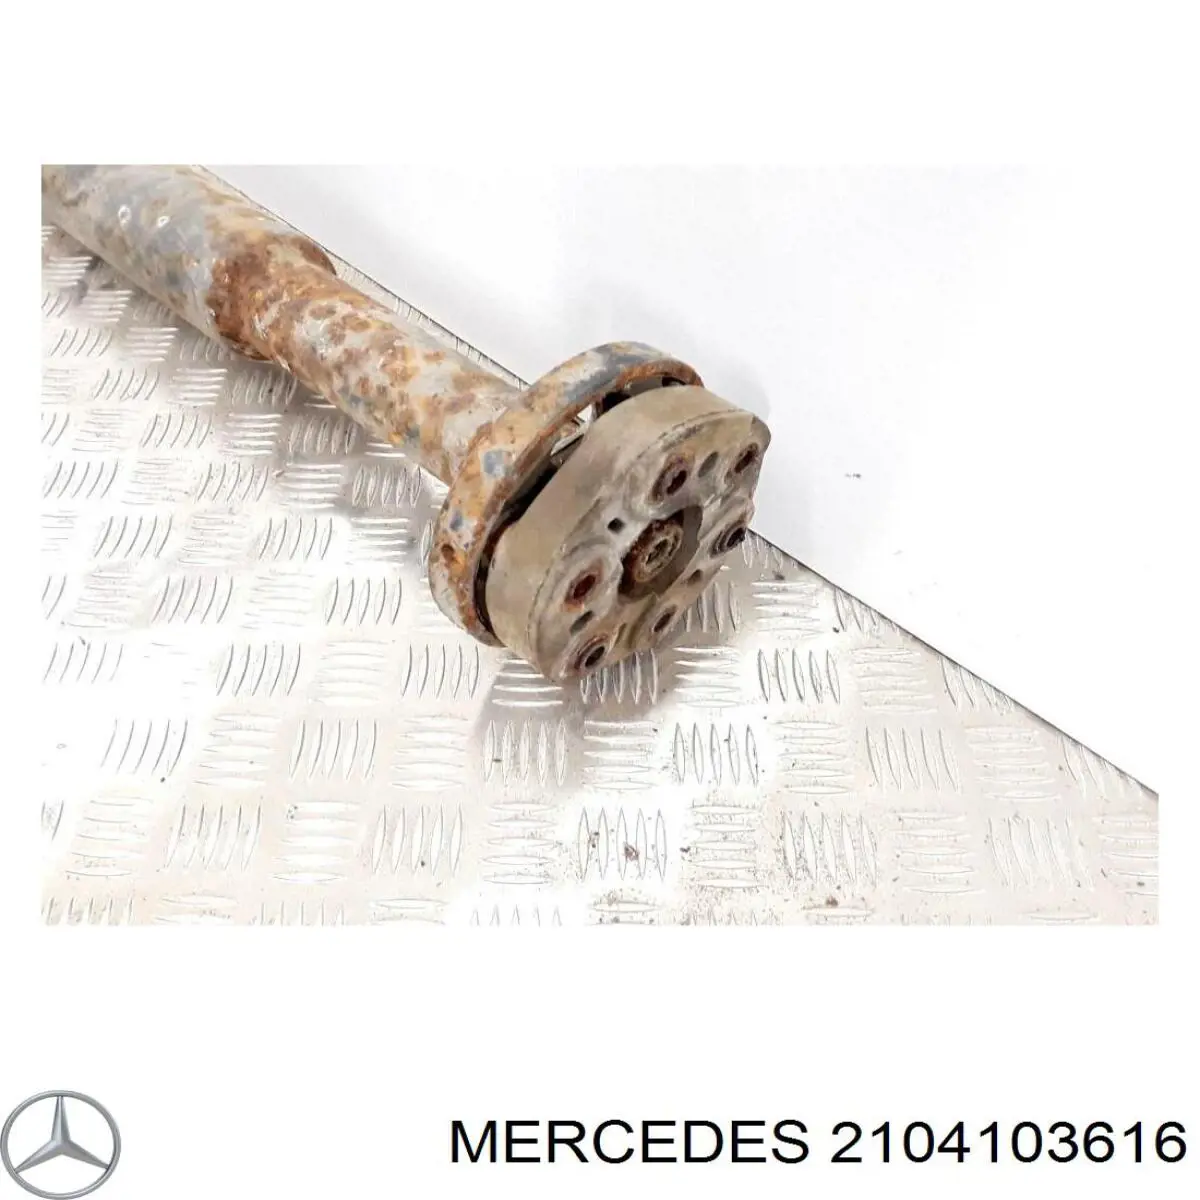 A2104103616 Mercedes вал карданный задний, в сборе